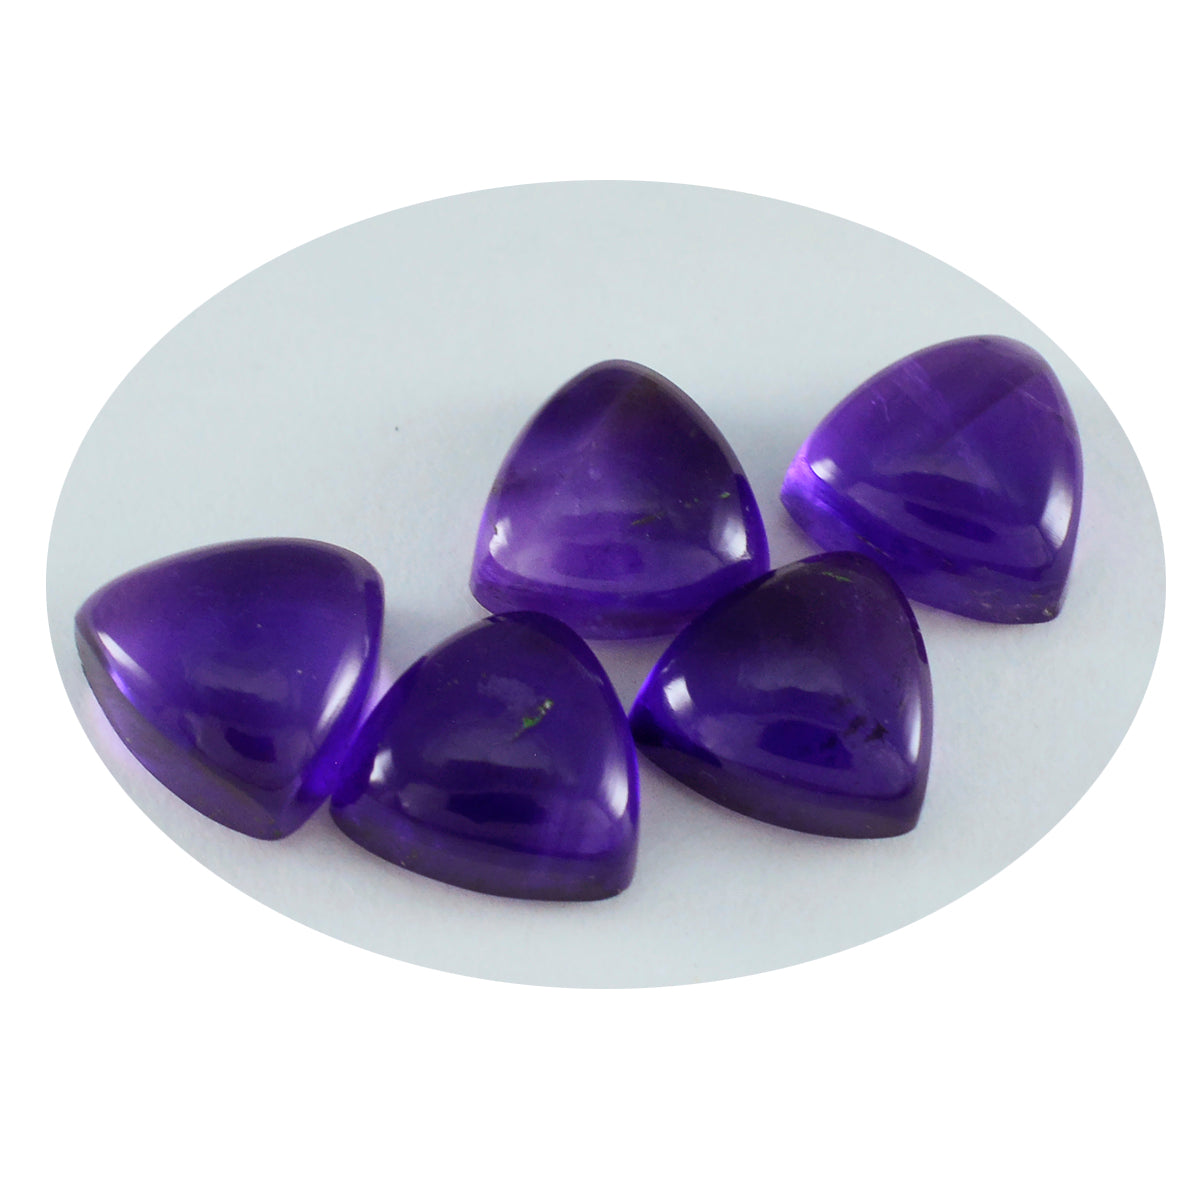 Riyogems 1PC Purple Amethyst Cabochon 10x10 mm Trillion Shape superb Quality Gems